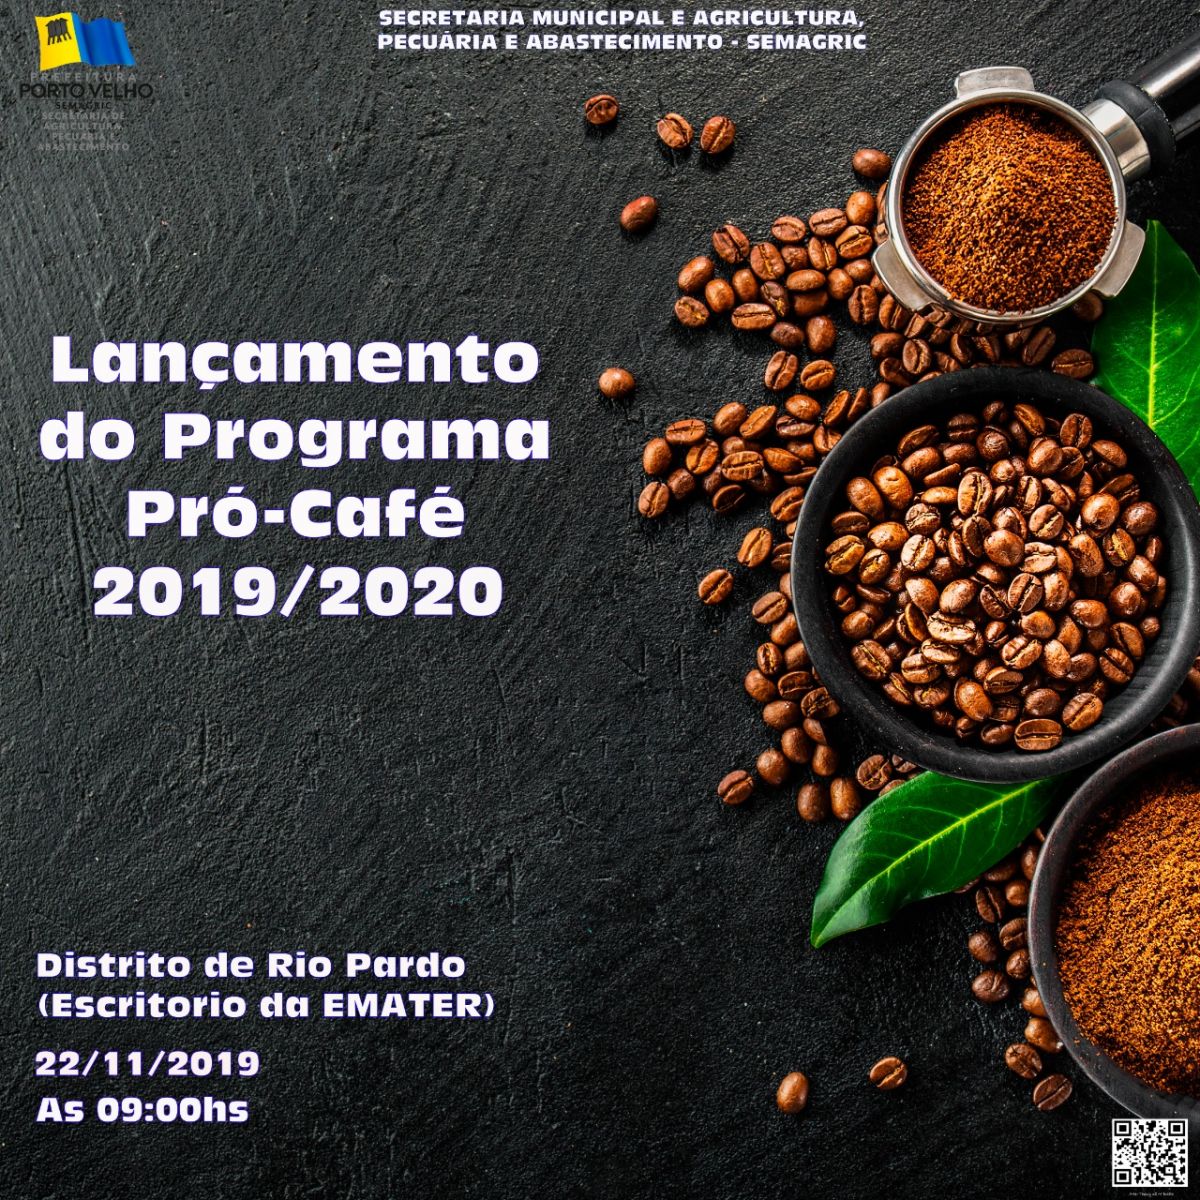 SEMAGRIC LANÇA PROGRAMA PRÓ-CAFÉ 2019/2020 NESTA SEXTA, EM RIO PARDO - News Rondônia